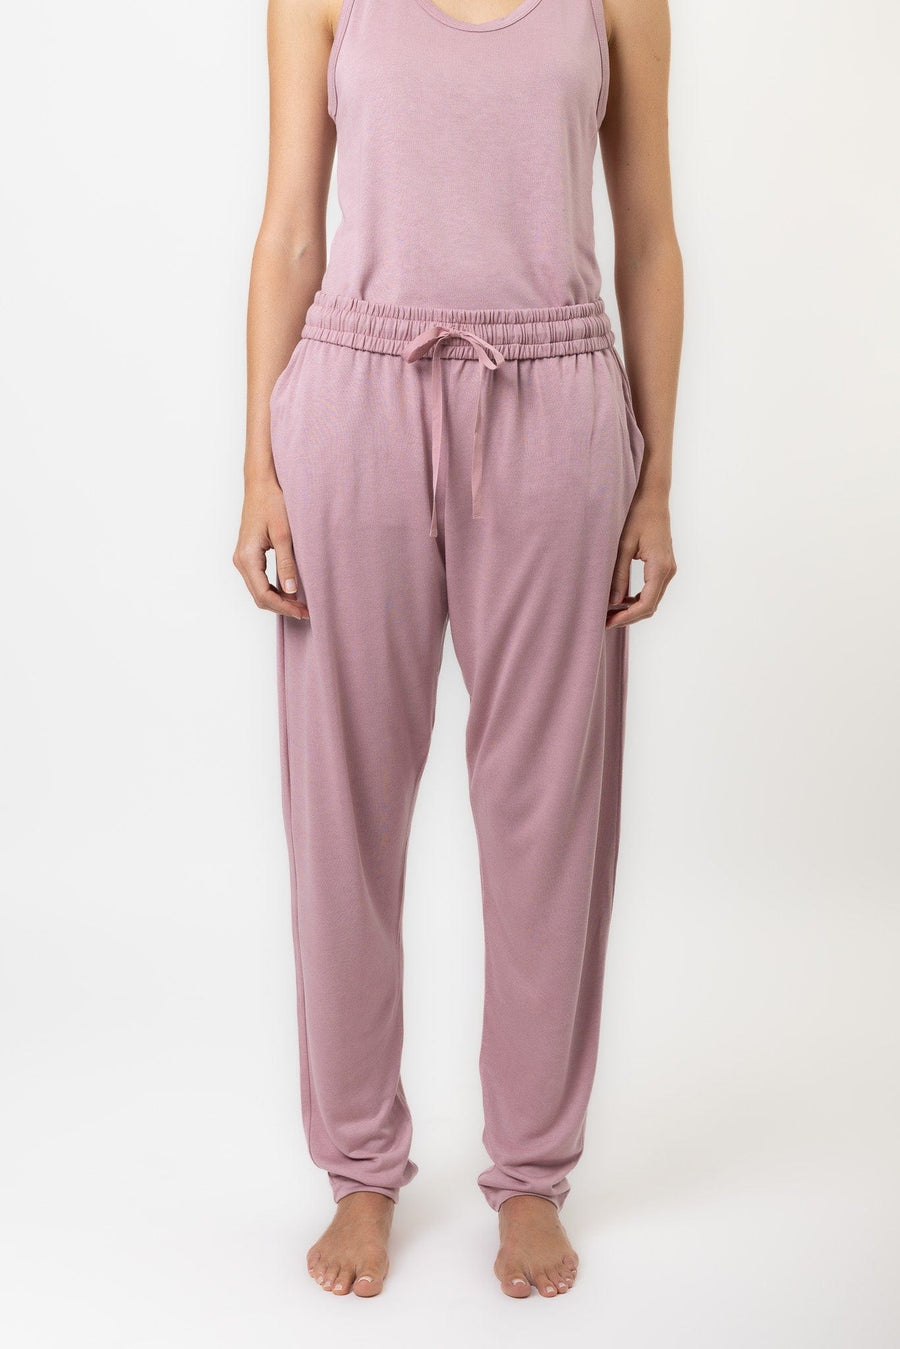 Lilt Pant | Blush Pink Lilt Pant Lounge Pants Pajamas Australia Online | Reverie the Label  BOTTOMS Lilt Pant